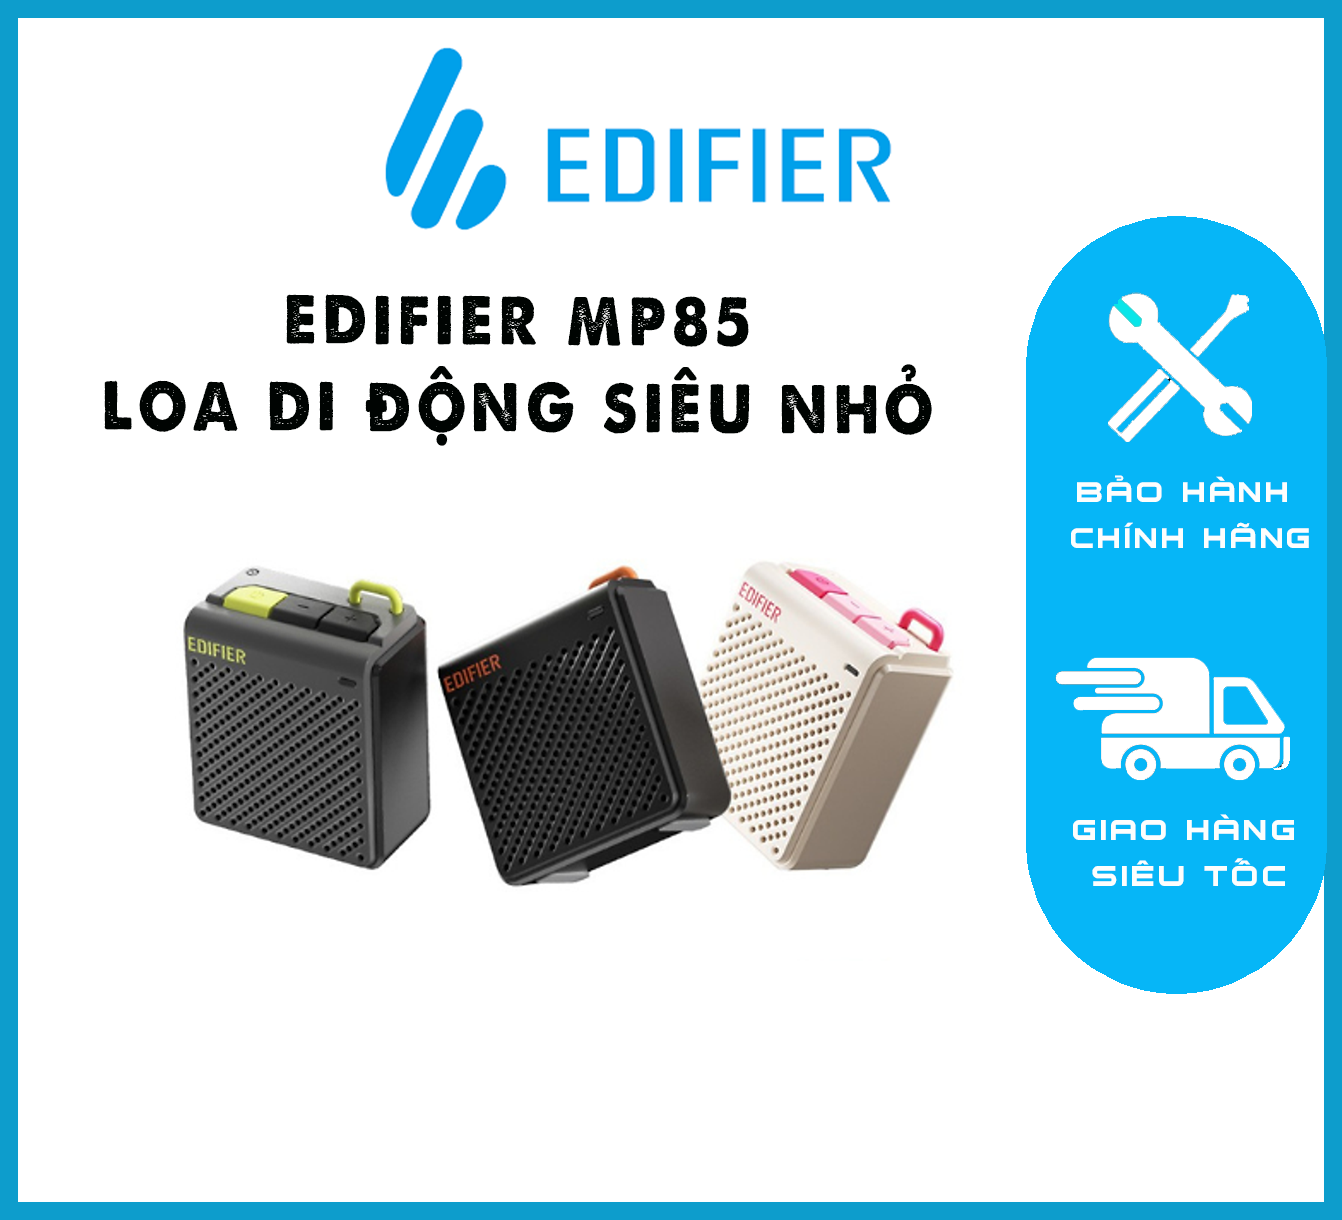 EDIFIER MP85 – Loa di động siêu nhỏ